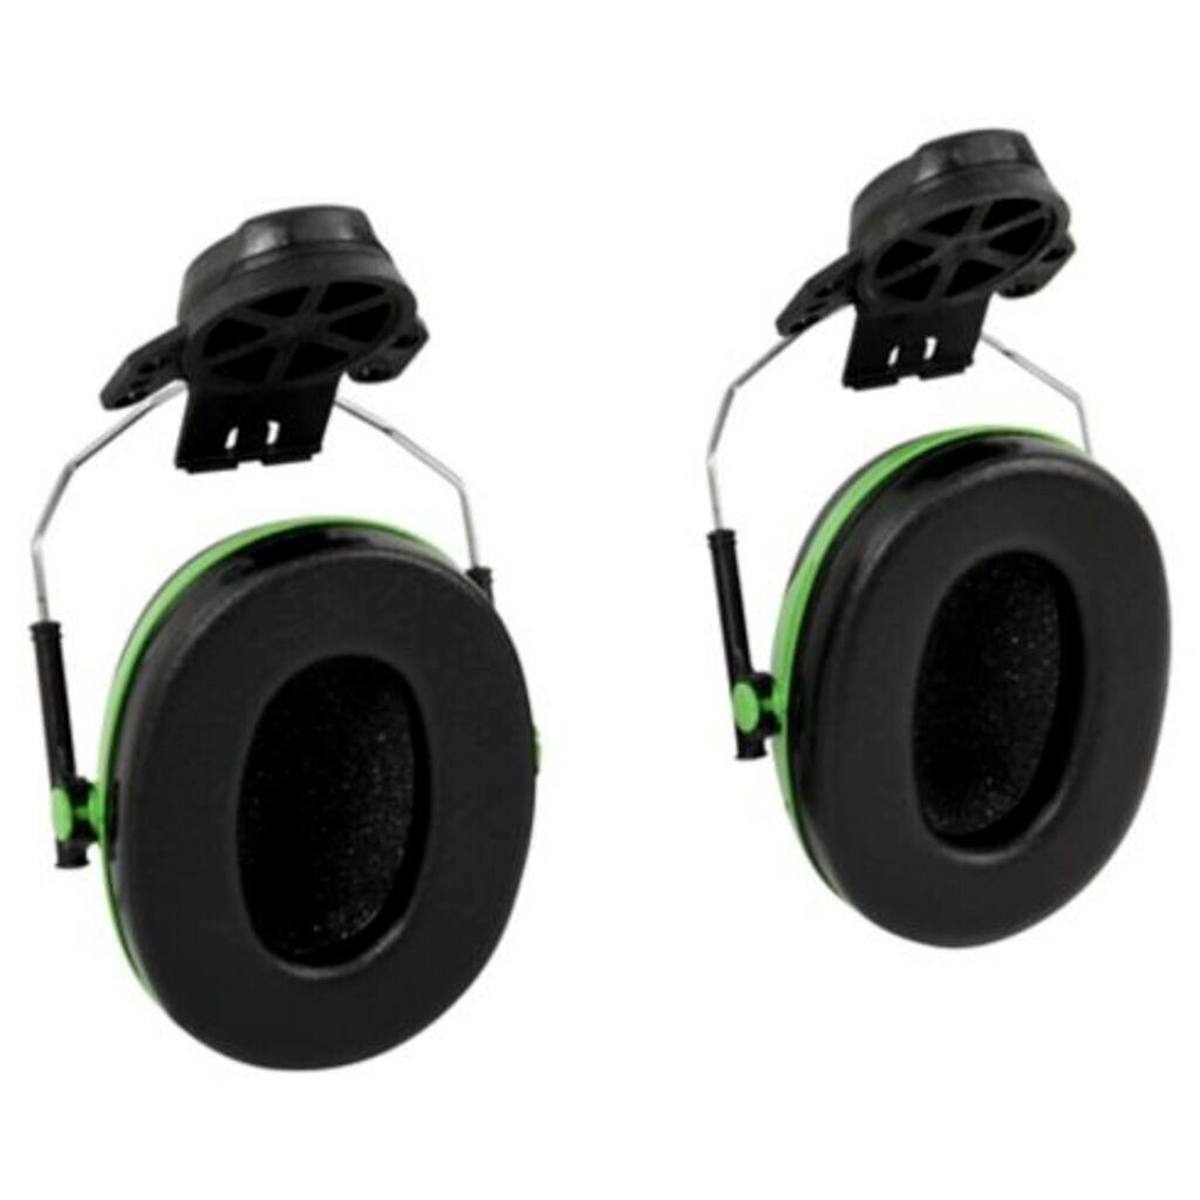 3M Peltor kuulokkeet, X1P3E kypäräkiinnitys, vihreä, SNR = 26 dB kypäräadapterin P3E kanssa (kaikkiin 3M kypäröihin, paitsi G2000).